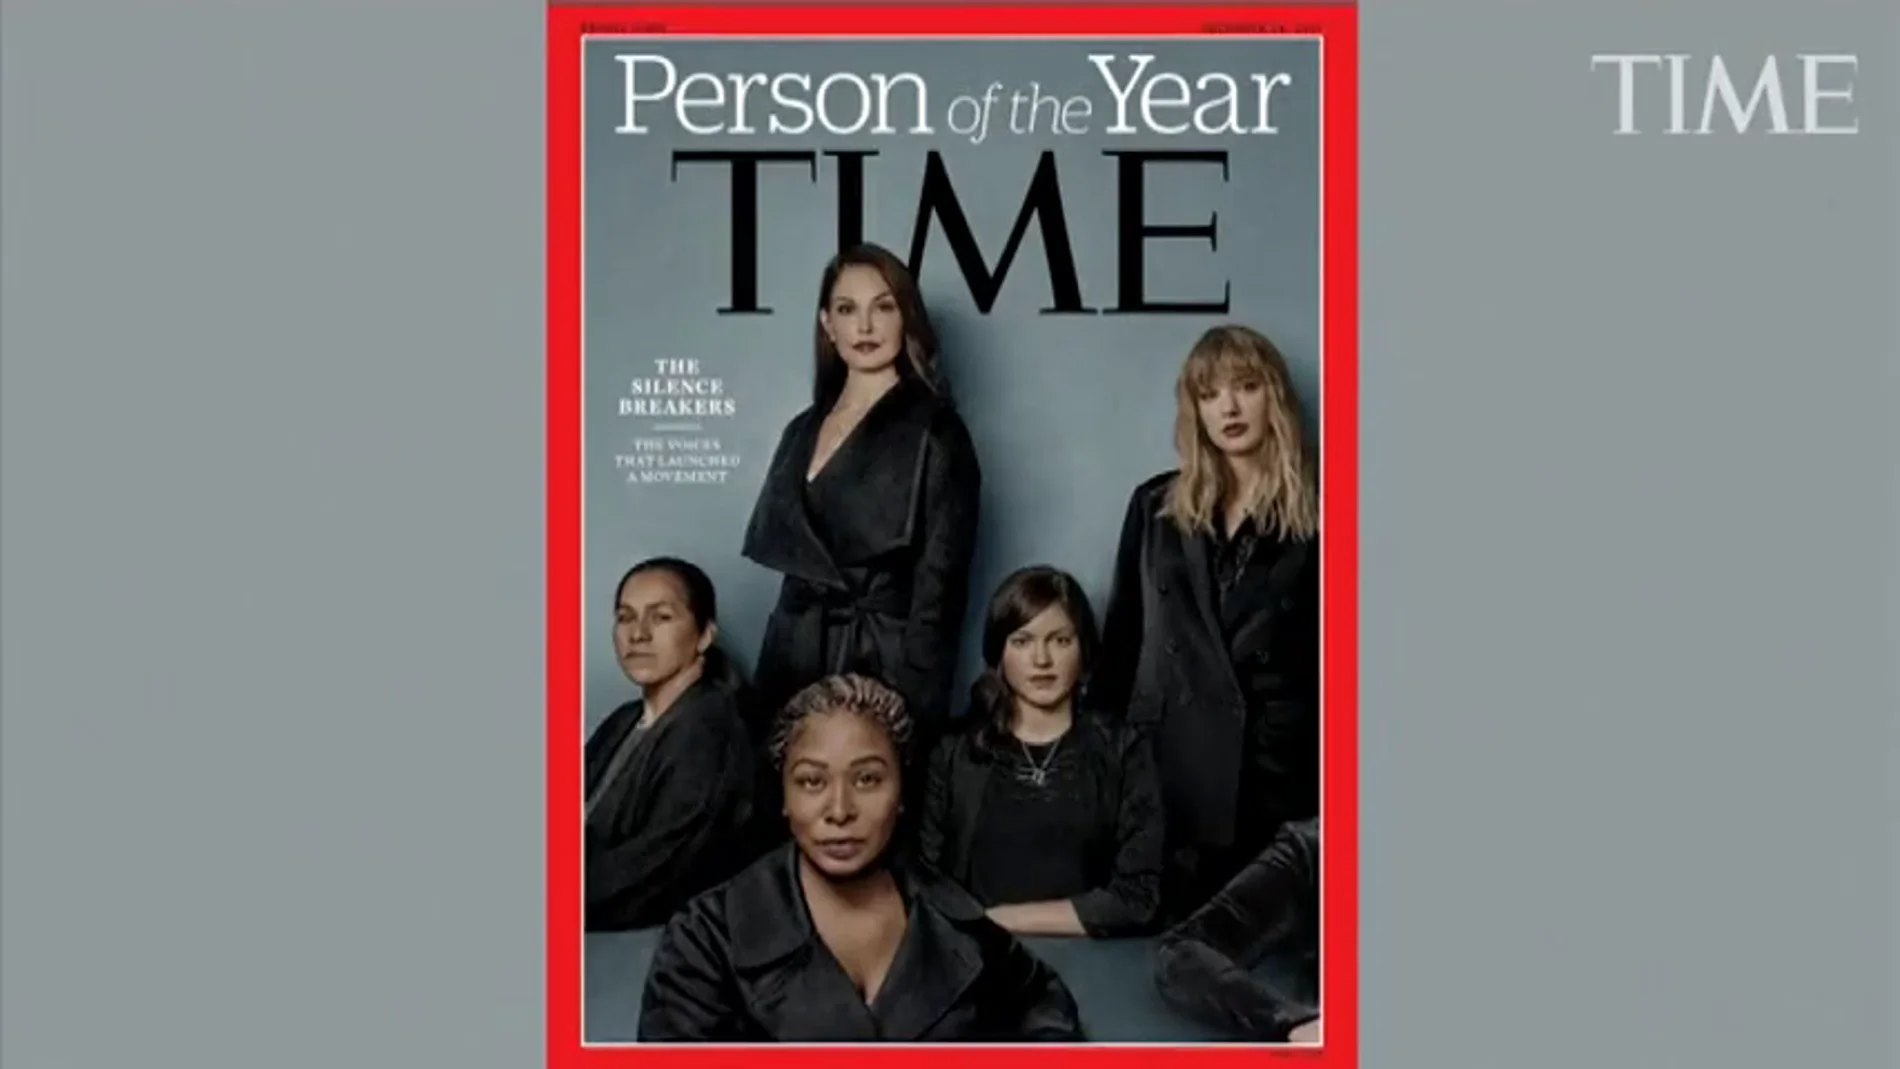 El movimiento contra los abusos sexuales, elegido Persona del Año por la revista Time